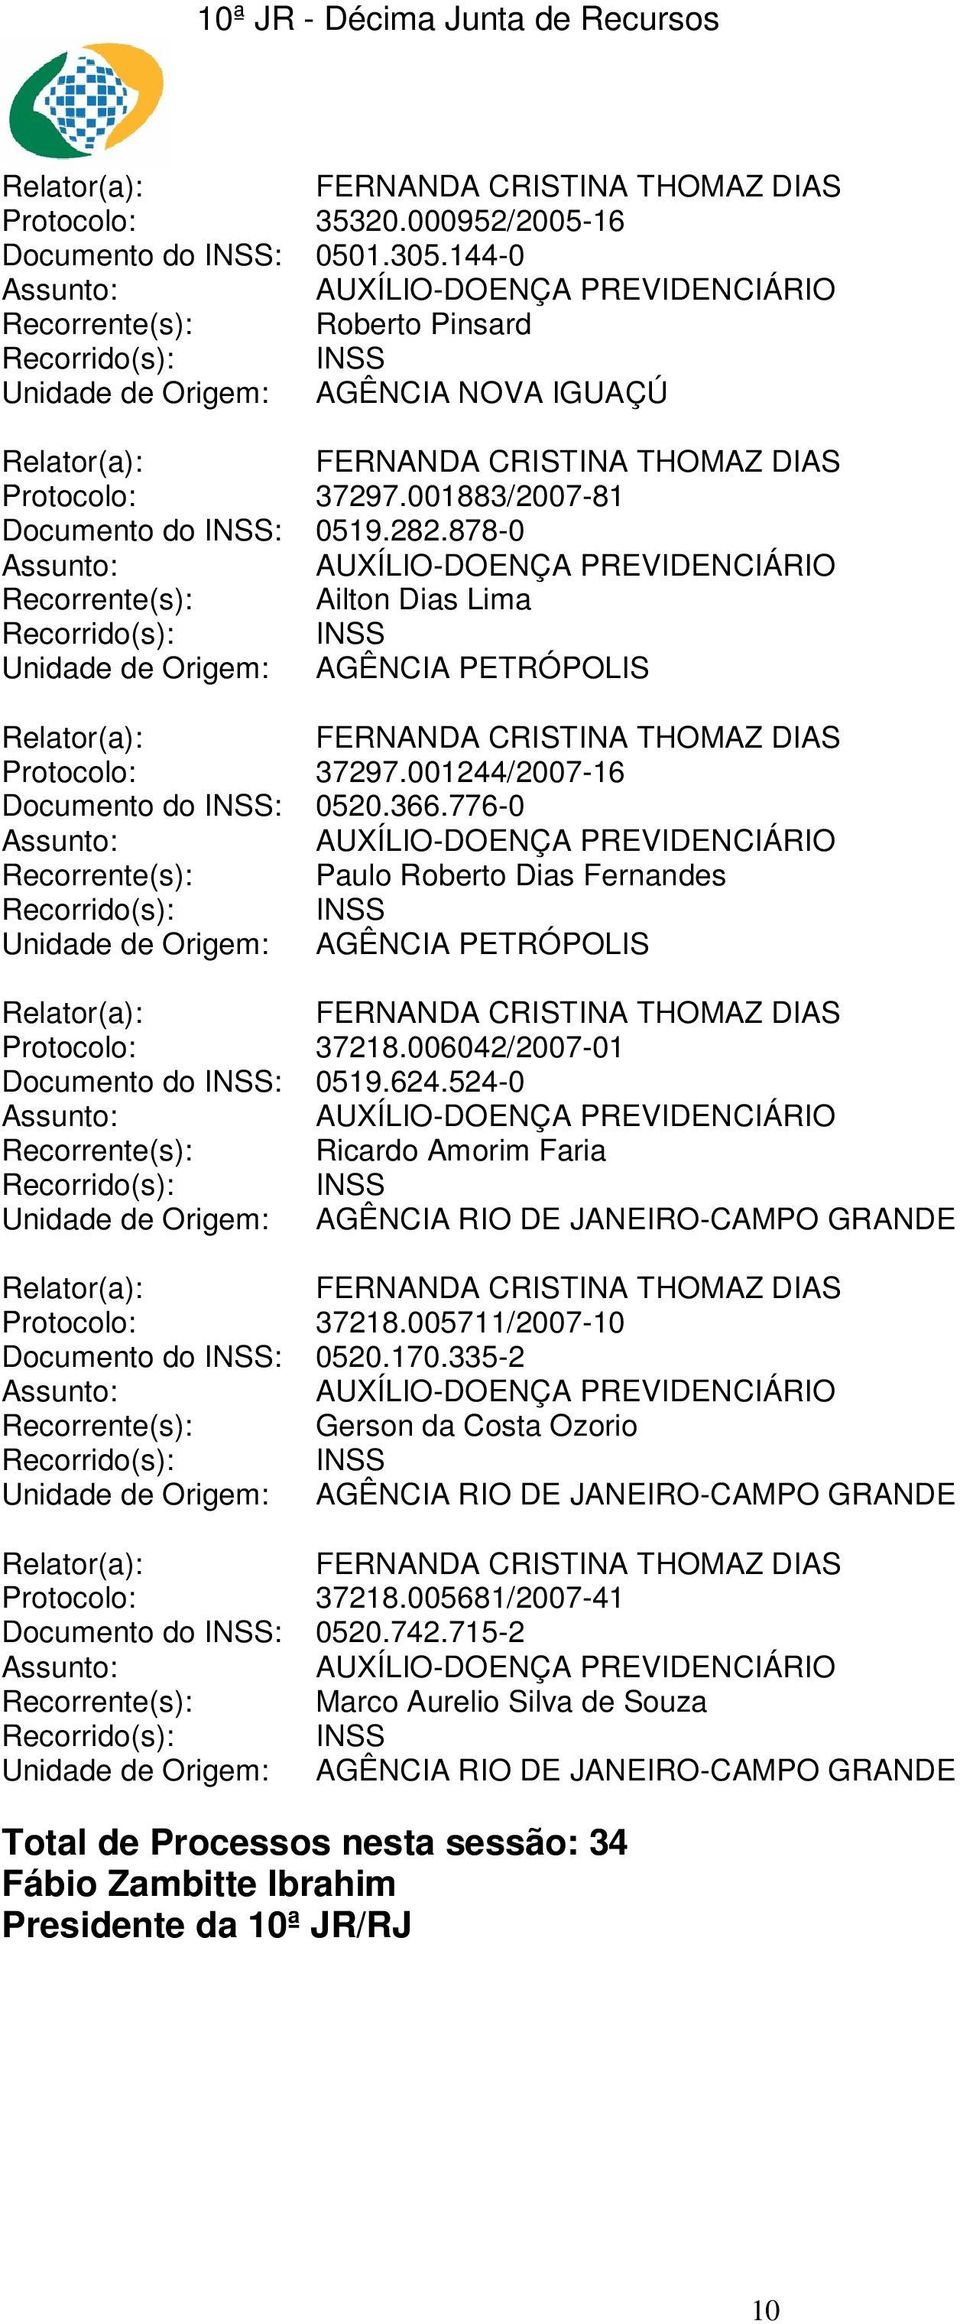 006042/2007-01 Documento do INSS: 0519.624.524-0 Recorrente(s): Ricardo Amorim Faria Unidade de Origem: AGÊNCIA RIO DE JANEIRO-CAMPO GRANDE Protocolo: 37218.005711/2007-10 Documento do INSS: 0520.170.